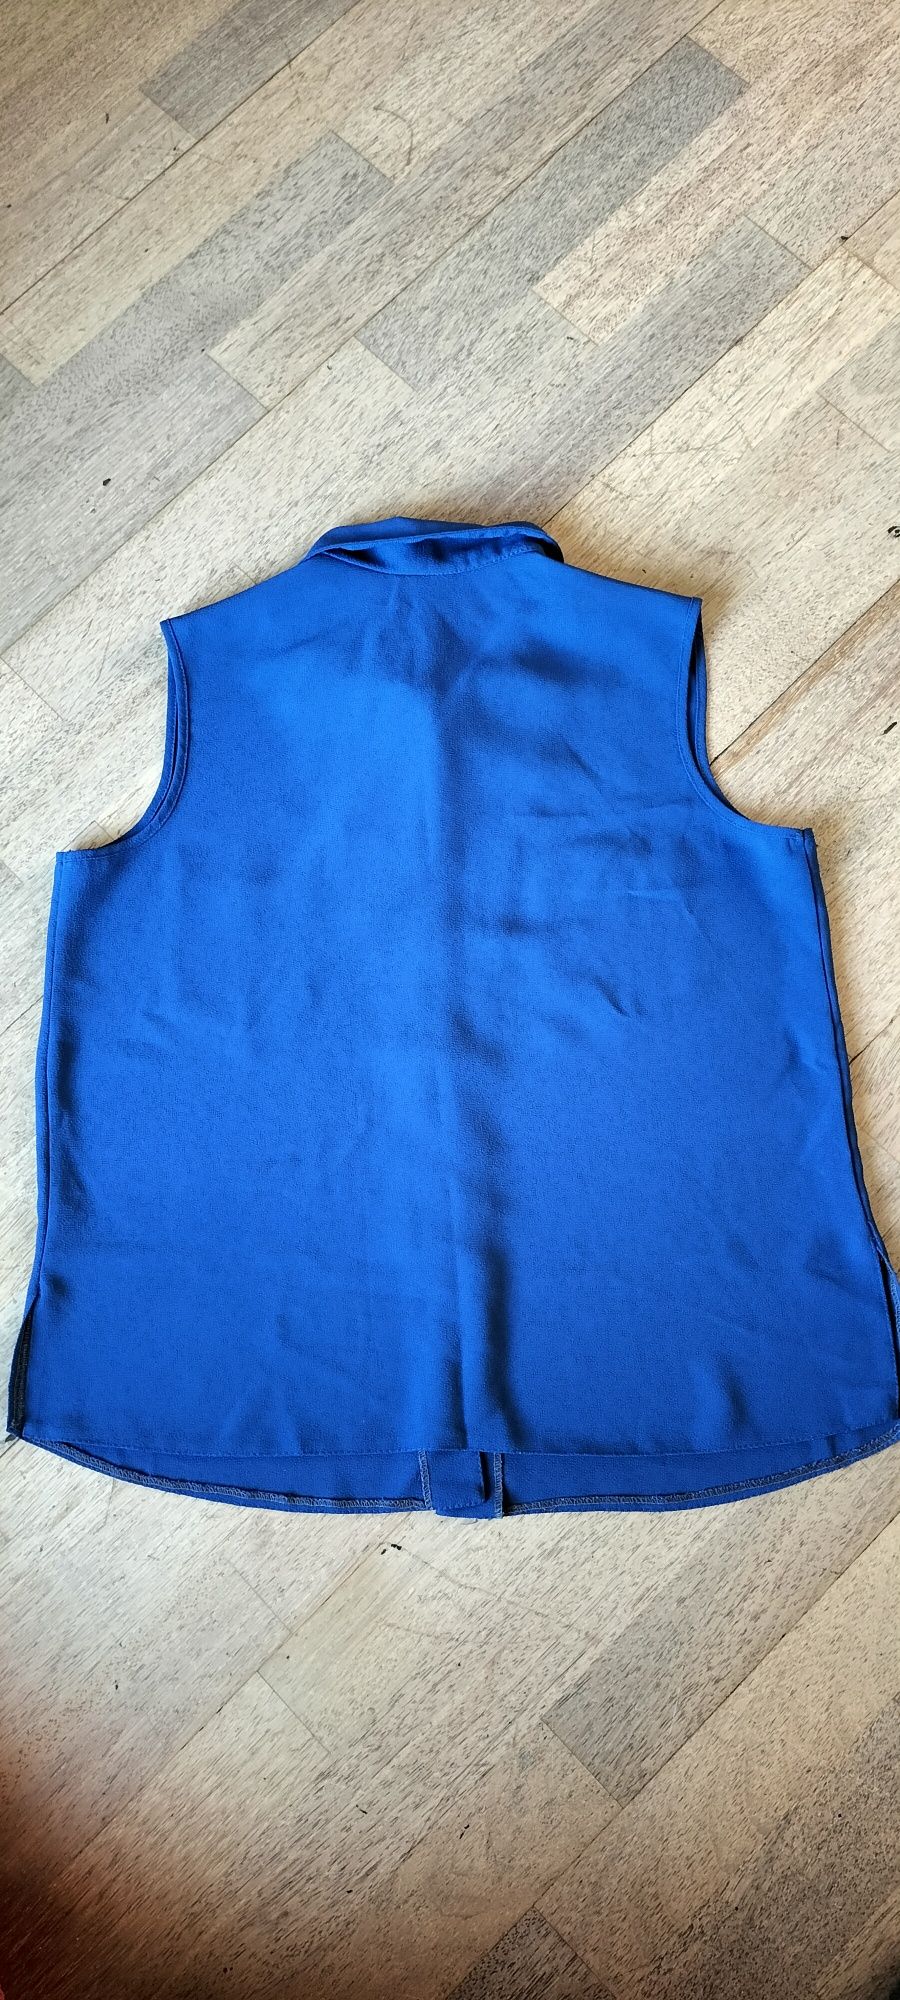 Bluzka damska top koszula cobalt granatowa bez rękawów z kołnierzem XL